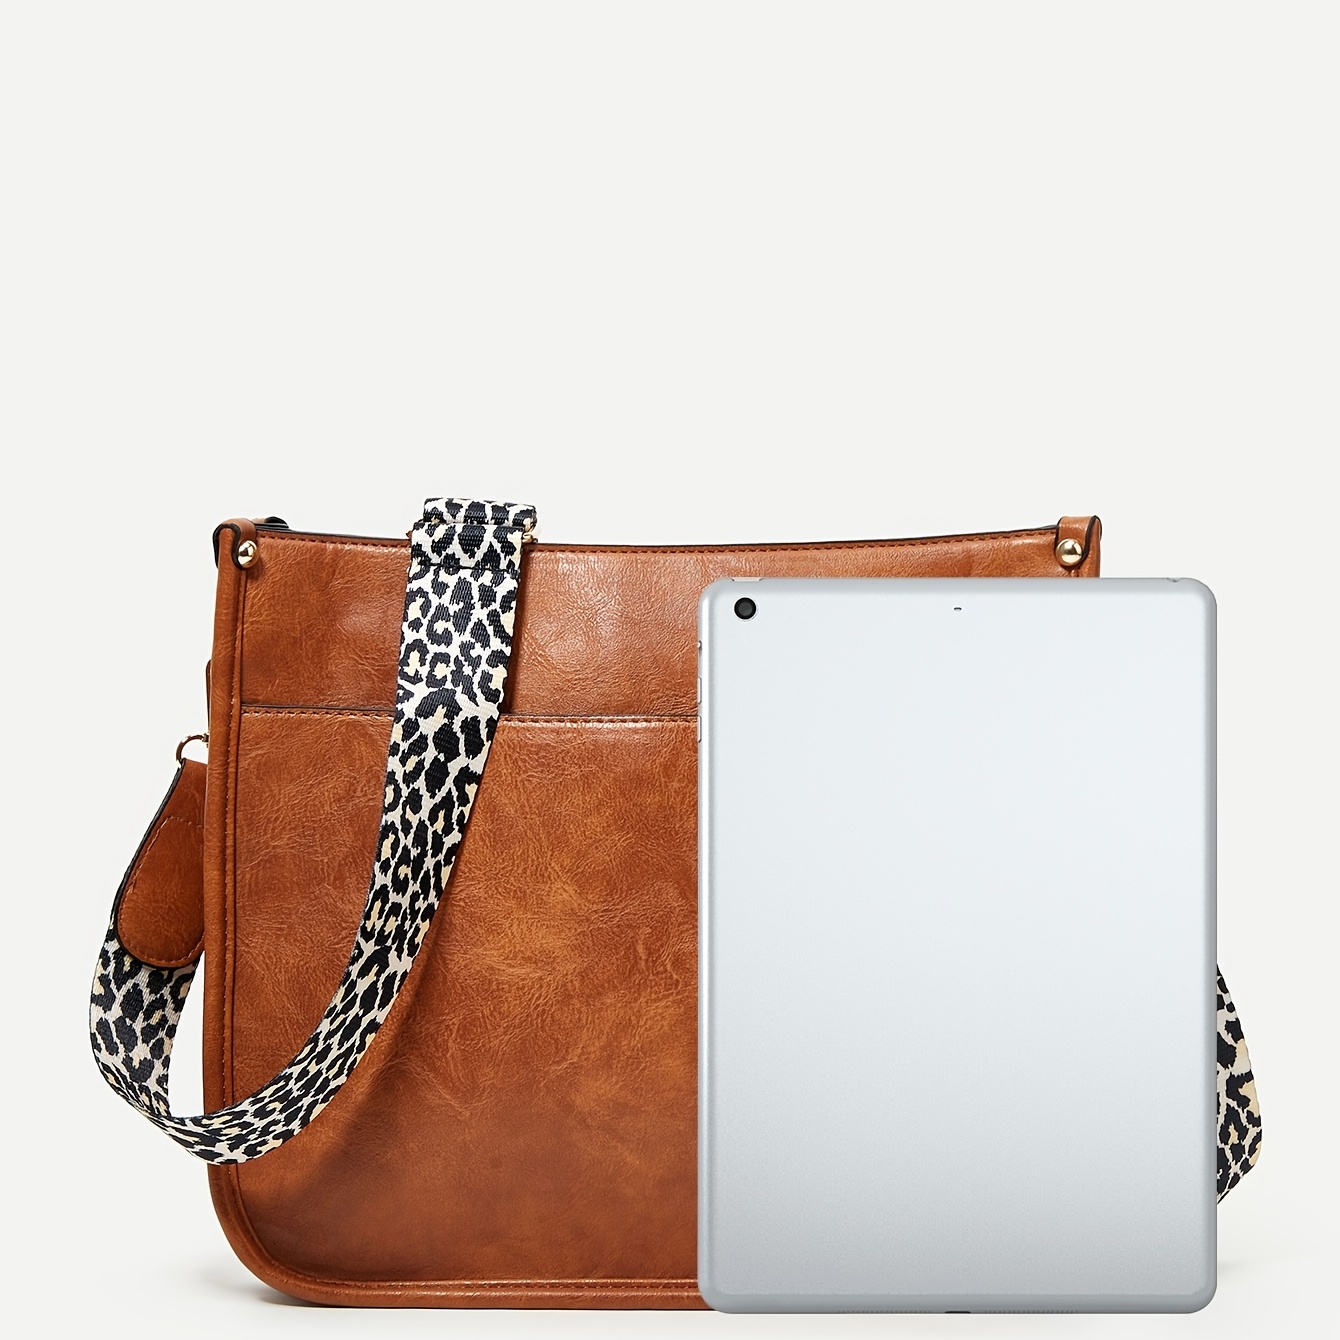 New Leopard Shoulder Straps Quality Pu Leather Shoulder Bag